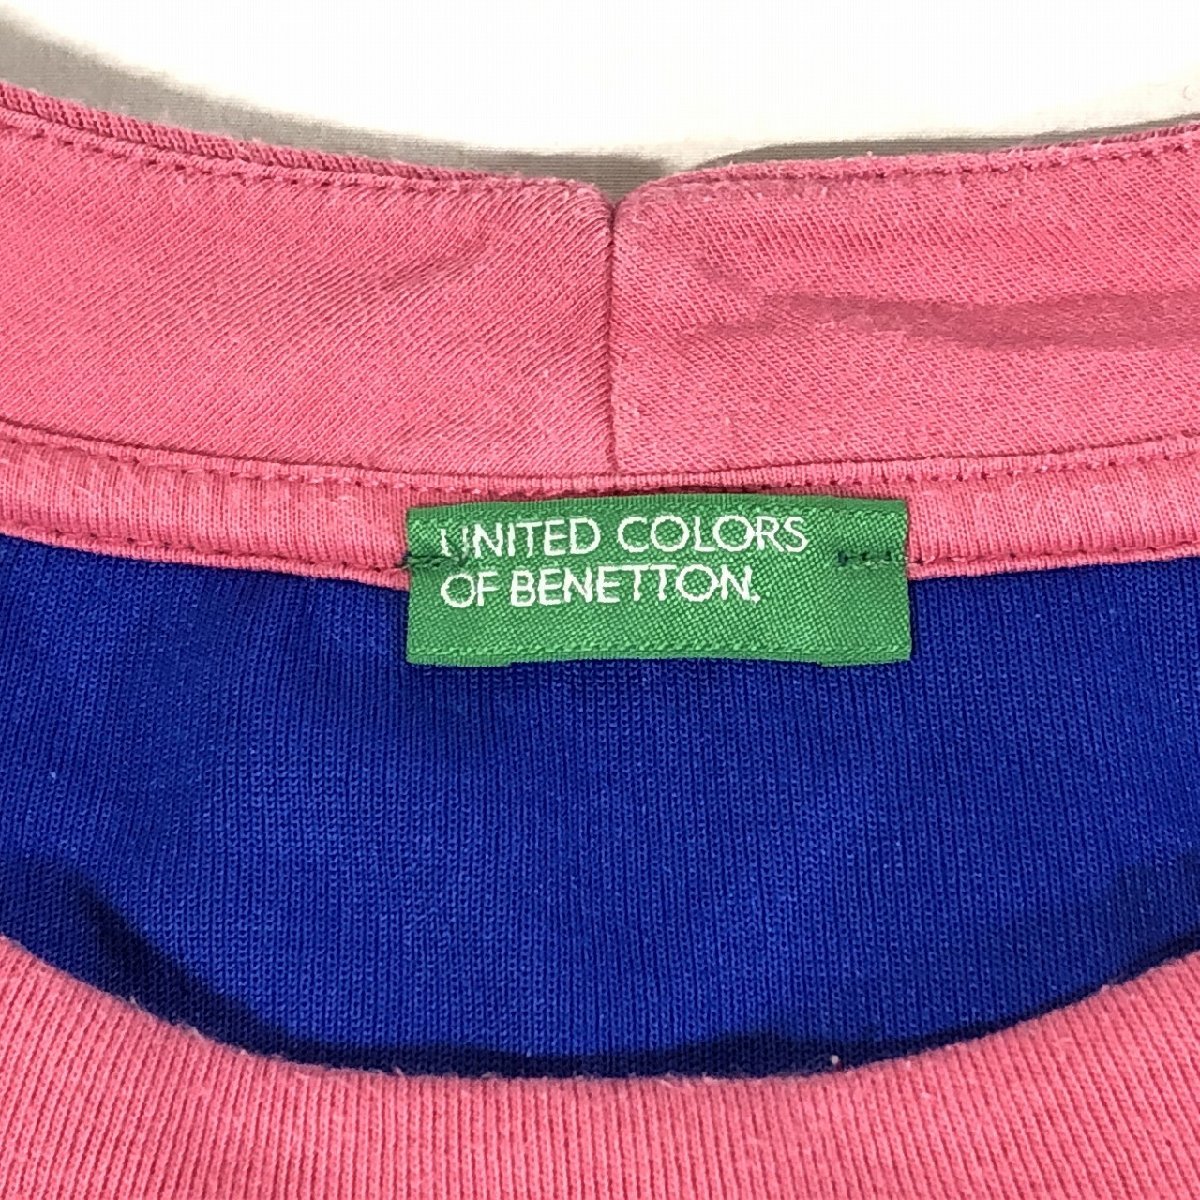 UNITED COLORS OF BENETTON united цвет zob Benetton длинный рукав s влажный земля футболка XS розовый немного прекрасный товар 